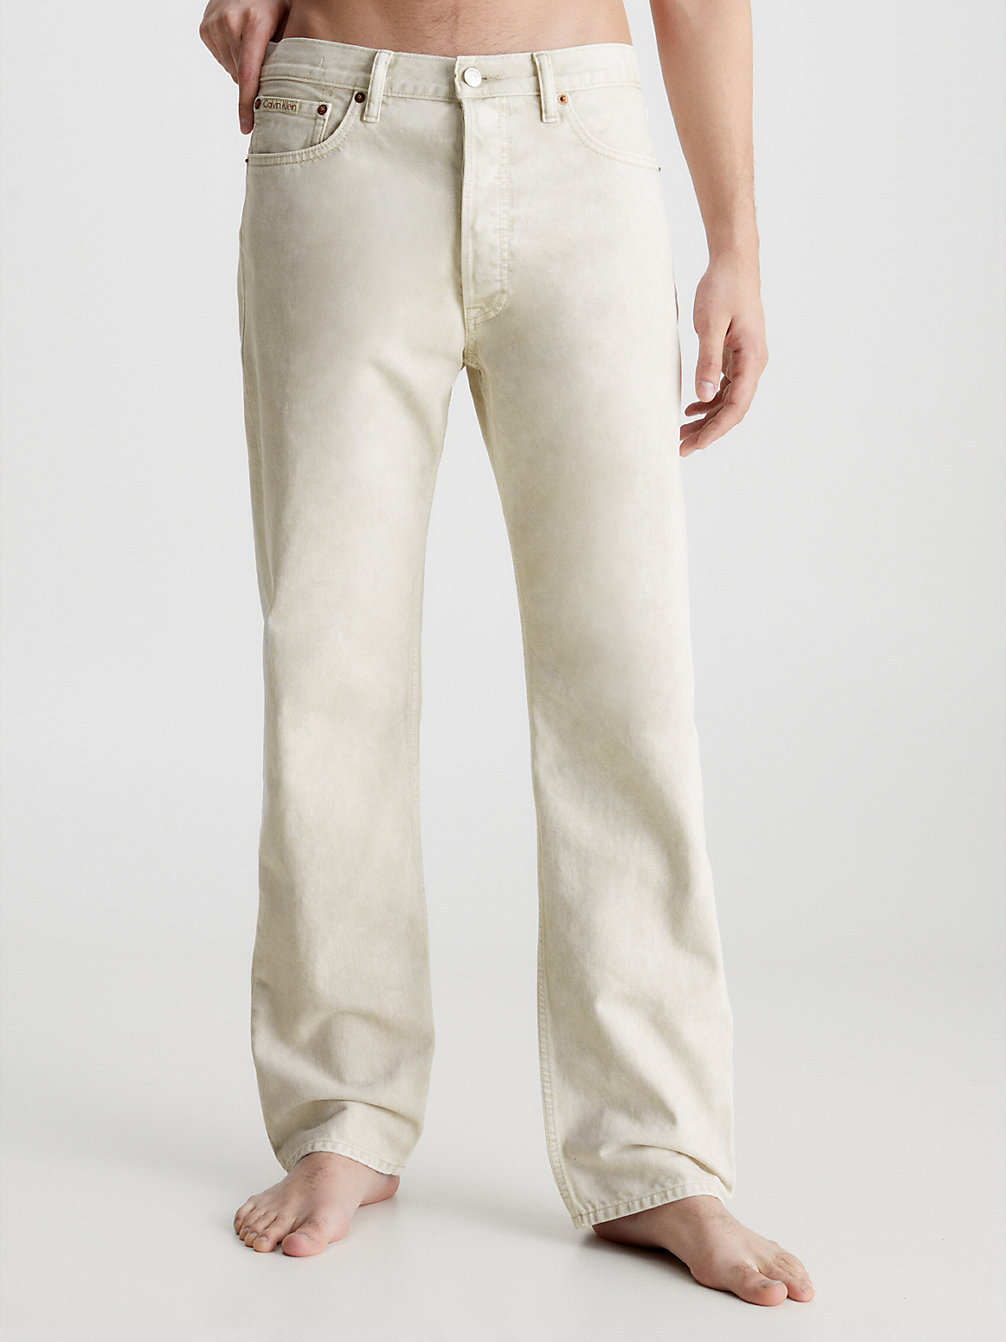 DENIM Unisex Straight Jeans - CK Standards undefined men Calvin Klein